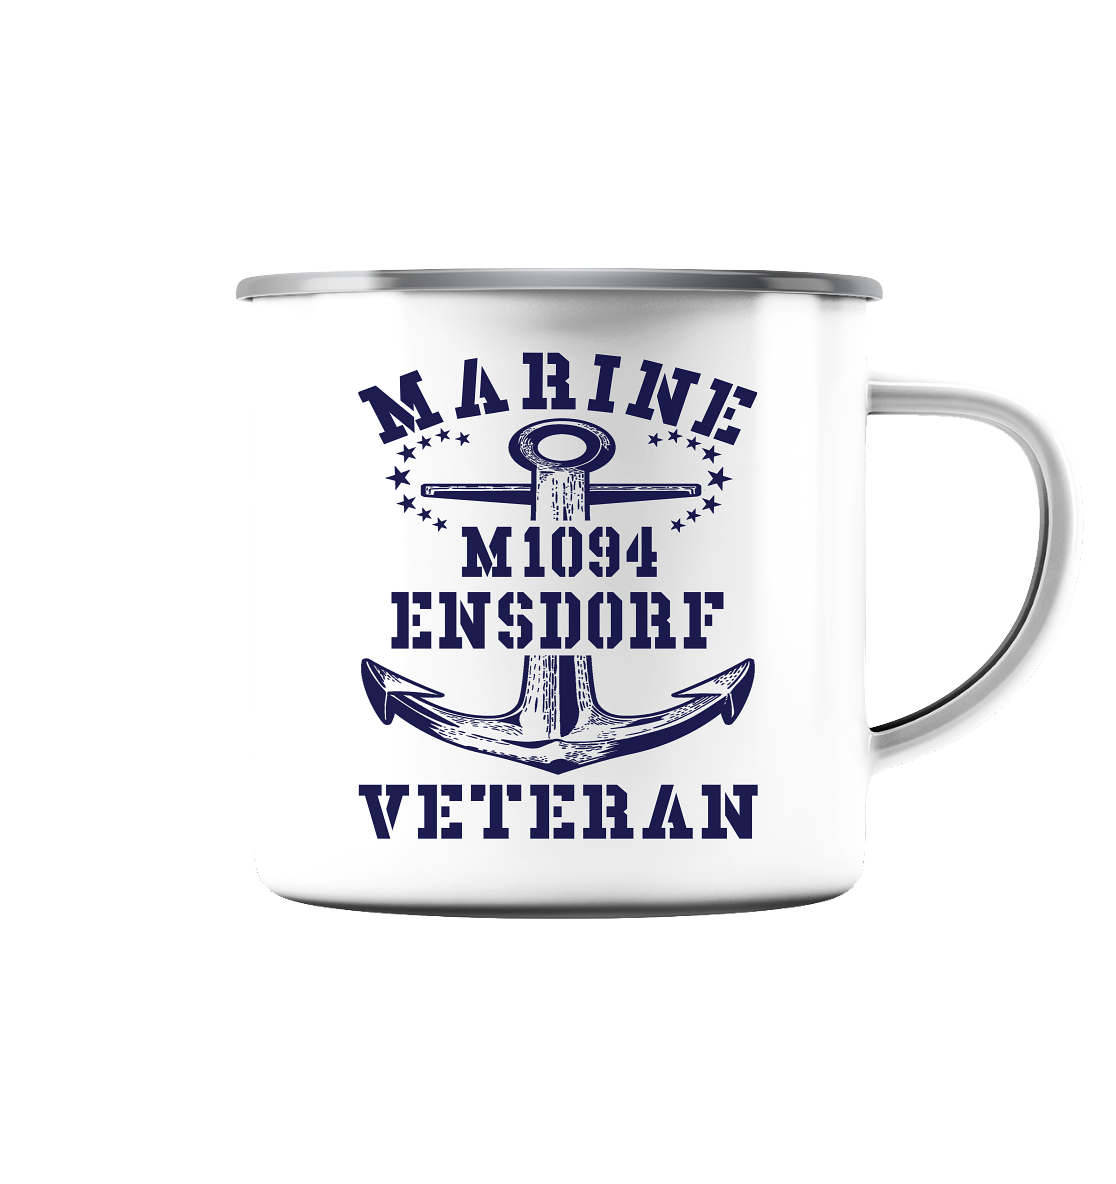 M1094 ENSDORF Marine Veteran - Emaille Tasse (Silber)